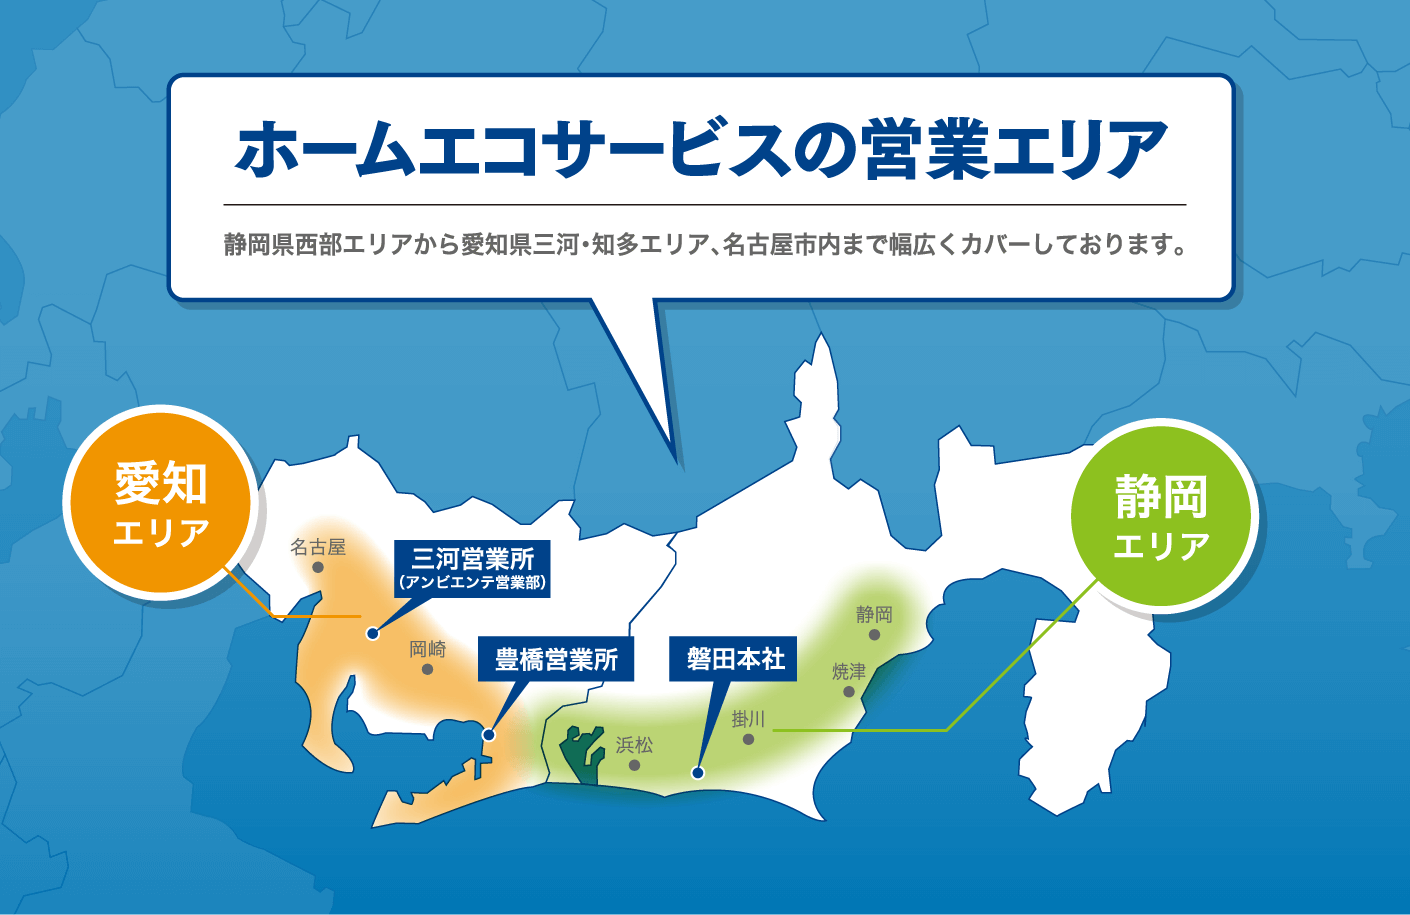 ホームエコサービスの営業エリア 静岡県西部エリアから愛知県三河エリア、名古屋市内まで幅広くカバーしております。